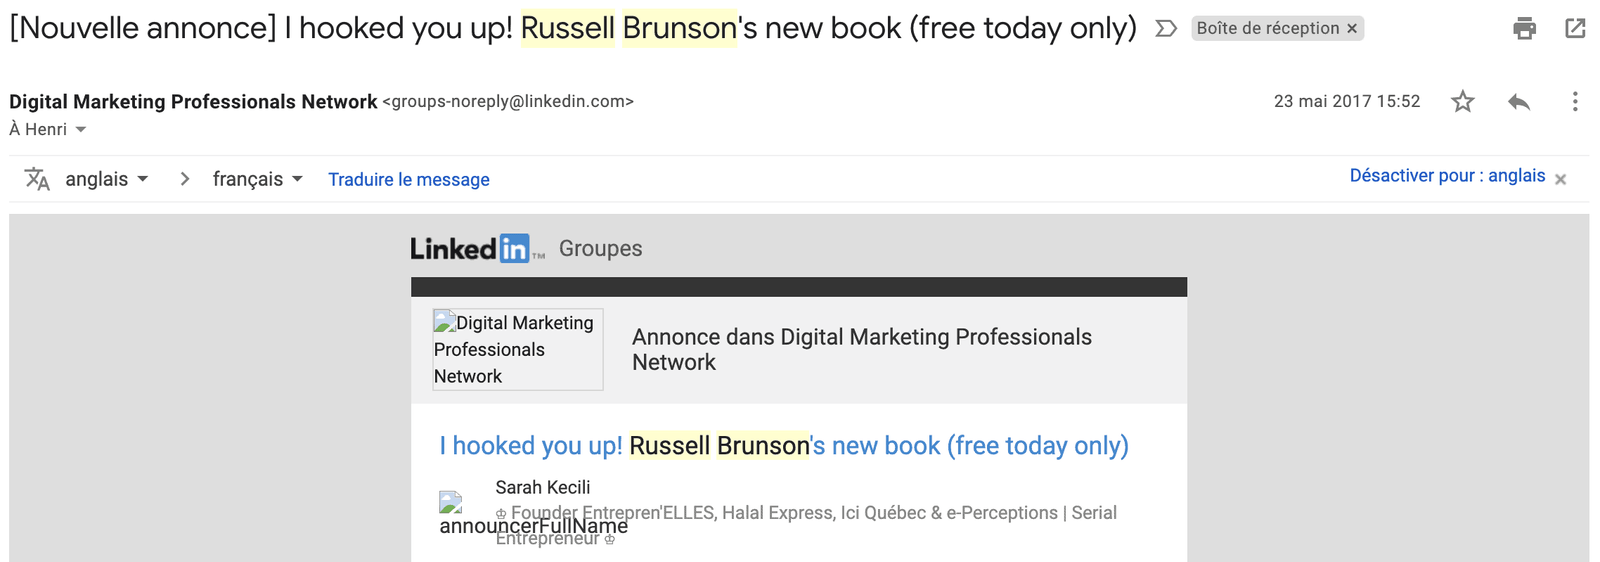 "rencontre" avec Russell Brunson sur LinkedIn en 2017